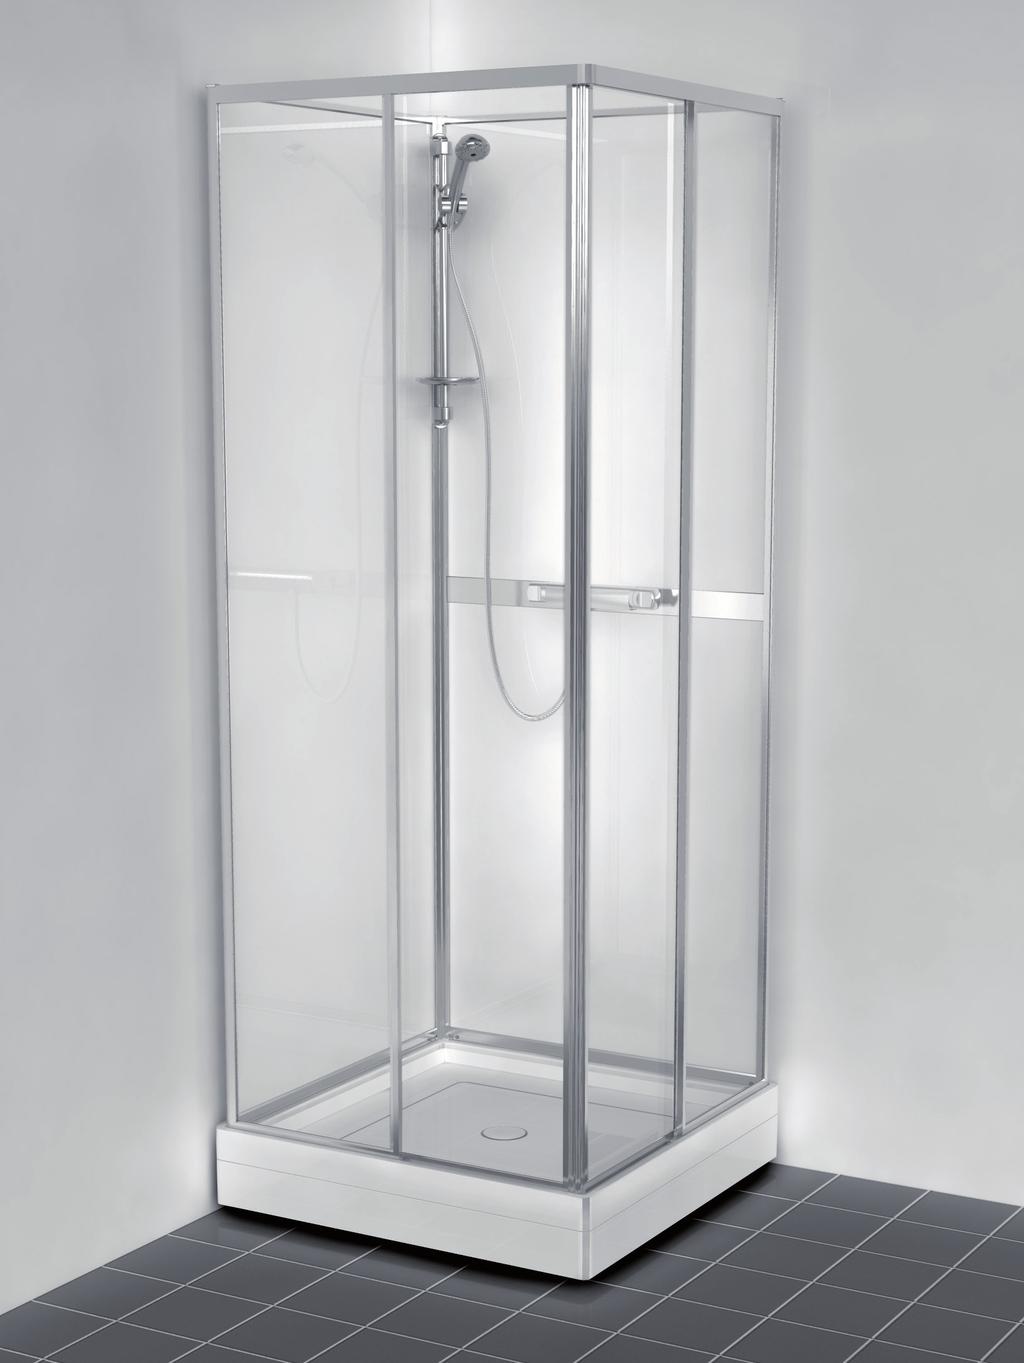 Poseidon duschkabin 80x80 cm. En duschkabin i lite enklare utförande med praktiska skjutdörrar i klarglas och bakväggar i mattmönstrat säkerhetsglas.